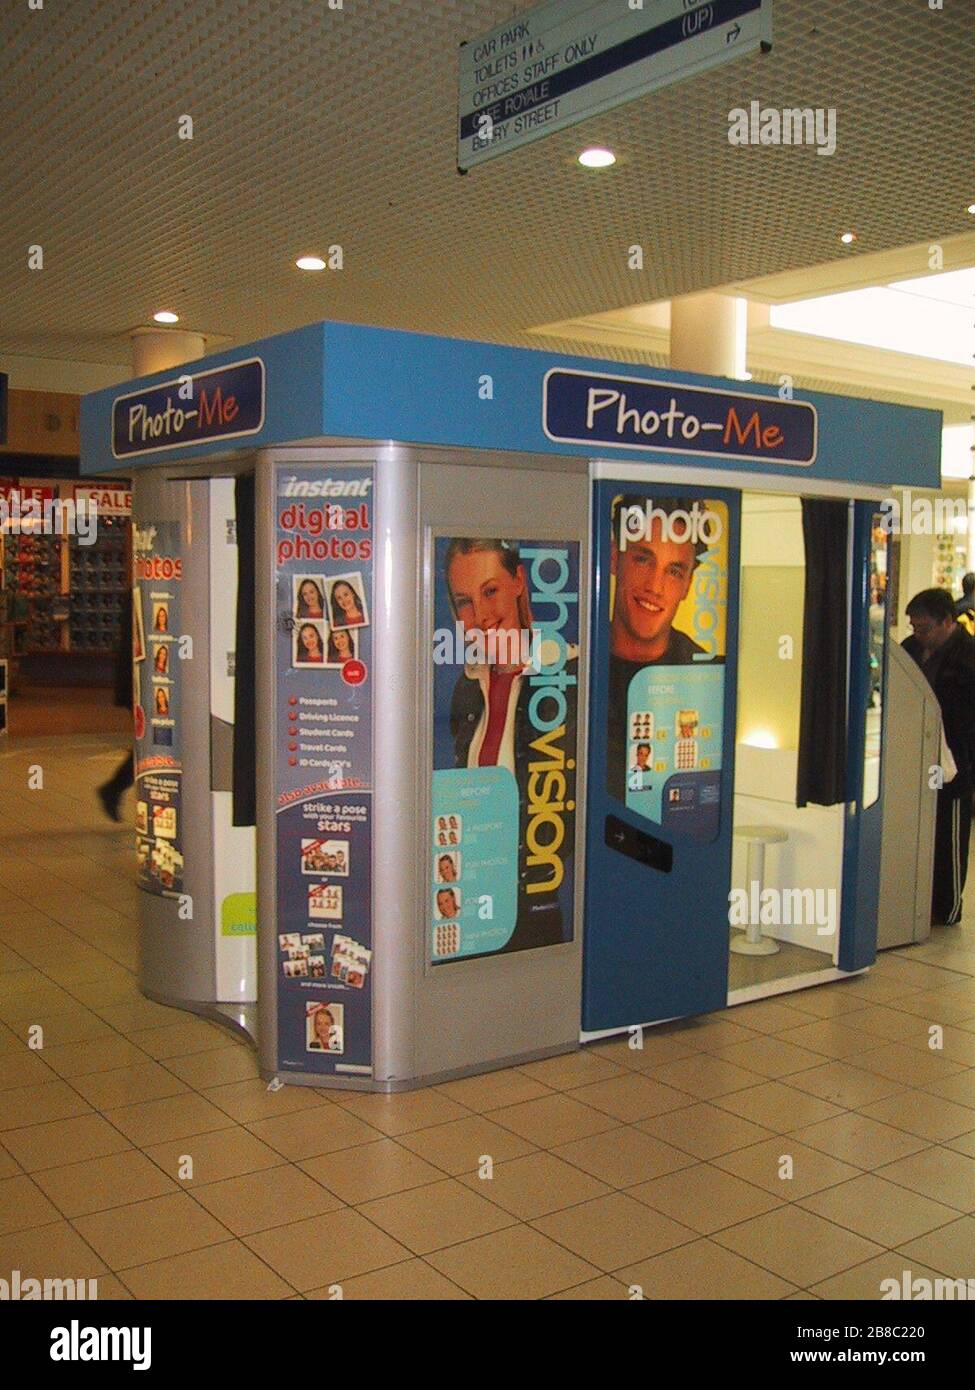 "Englisch: Photo Booth Installation im Einkaufszentrum Castle Court, Irland. 2003; 15. September 2003; der eigenen Arbeit durch den ursprünglichen Uploader; Einfügen;". Stockfoto